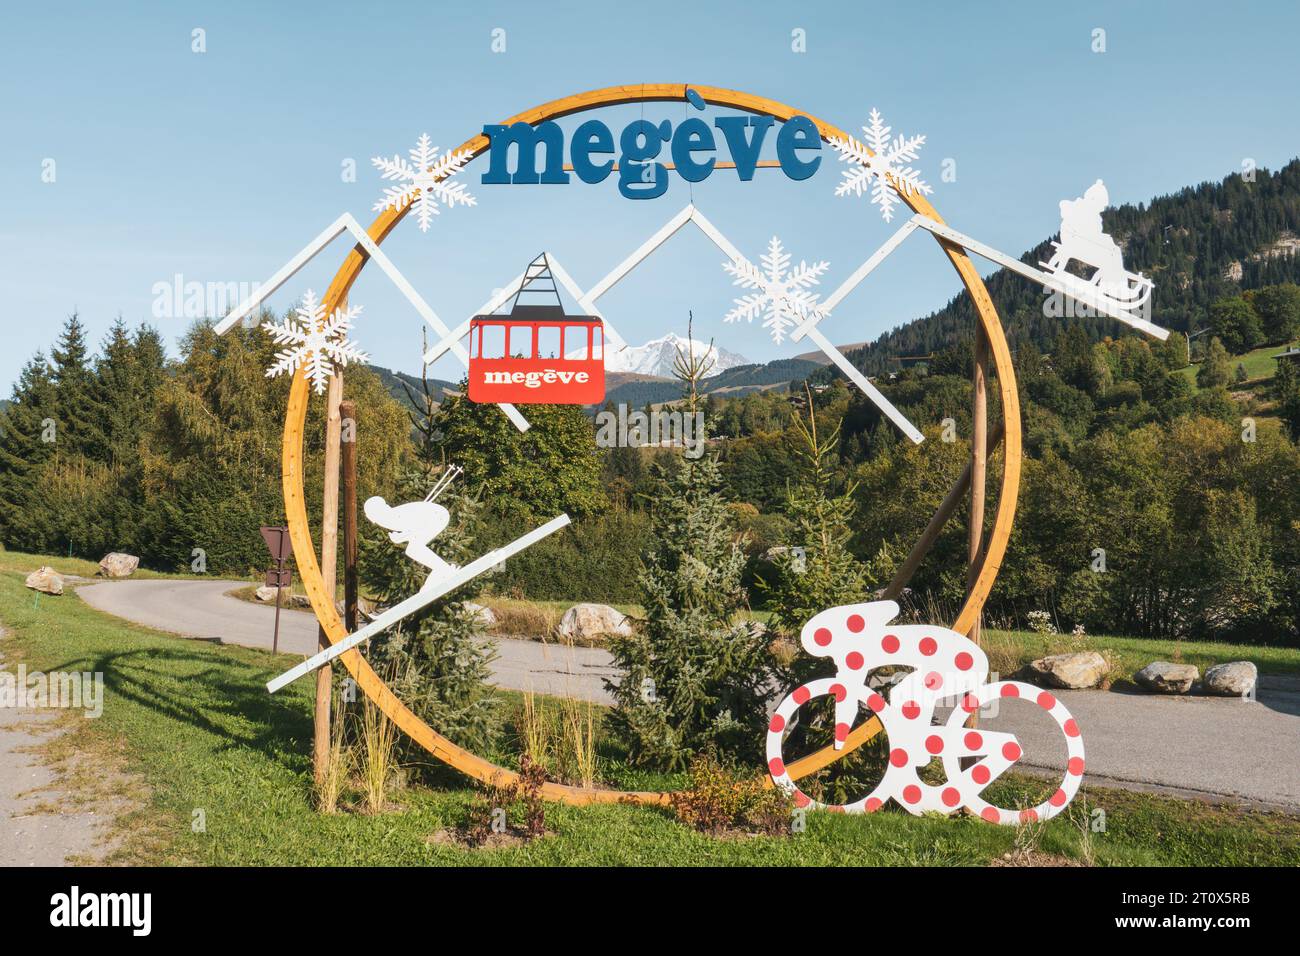 Megève, città dell'alta Savoia, regione dell'Alvernia-Rhône-Alpes, nel sud-est della Francia. Stazione sciistica vicino al Monte bianco nelle Alpi francesi. Foto Stock